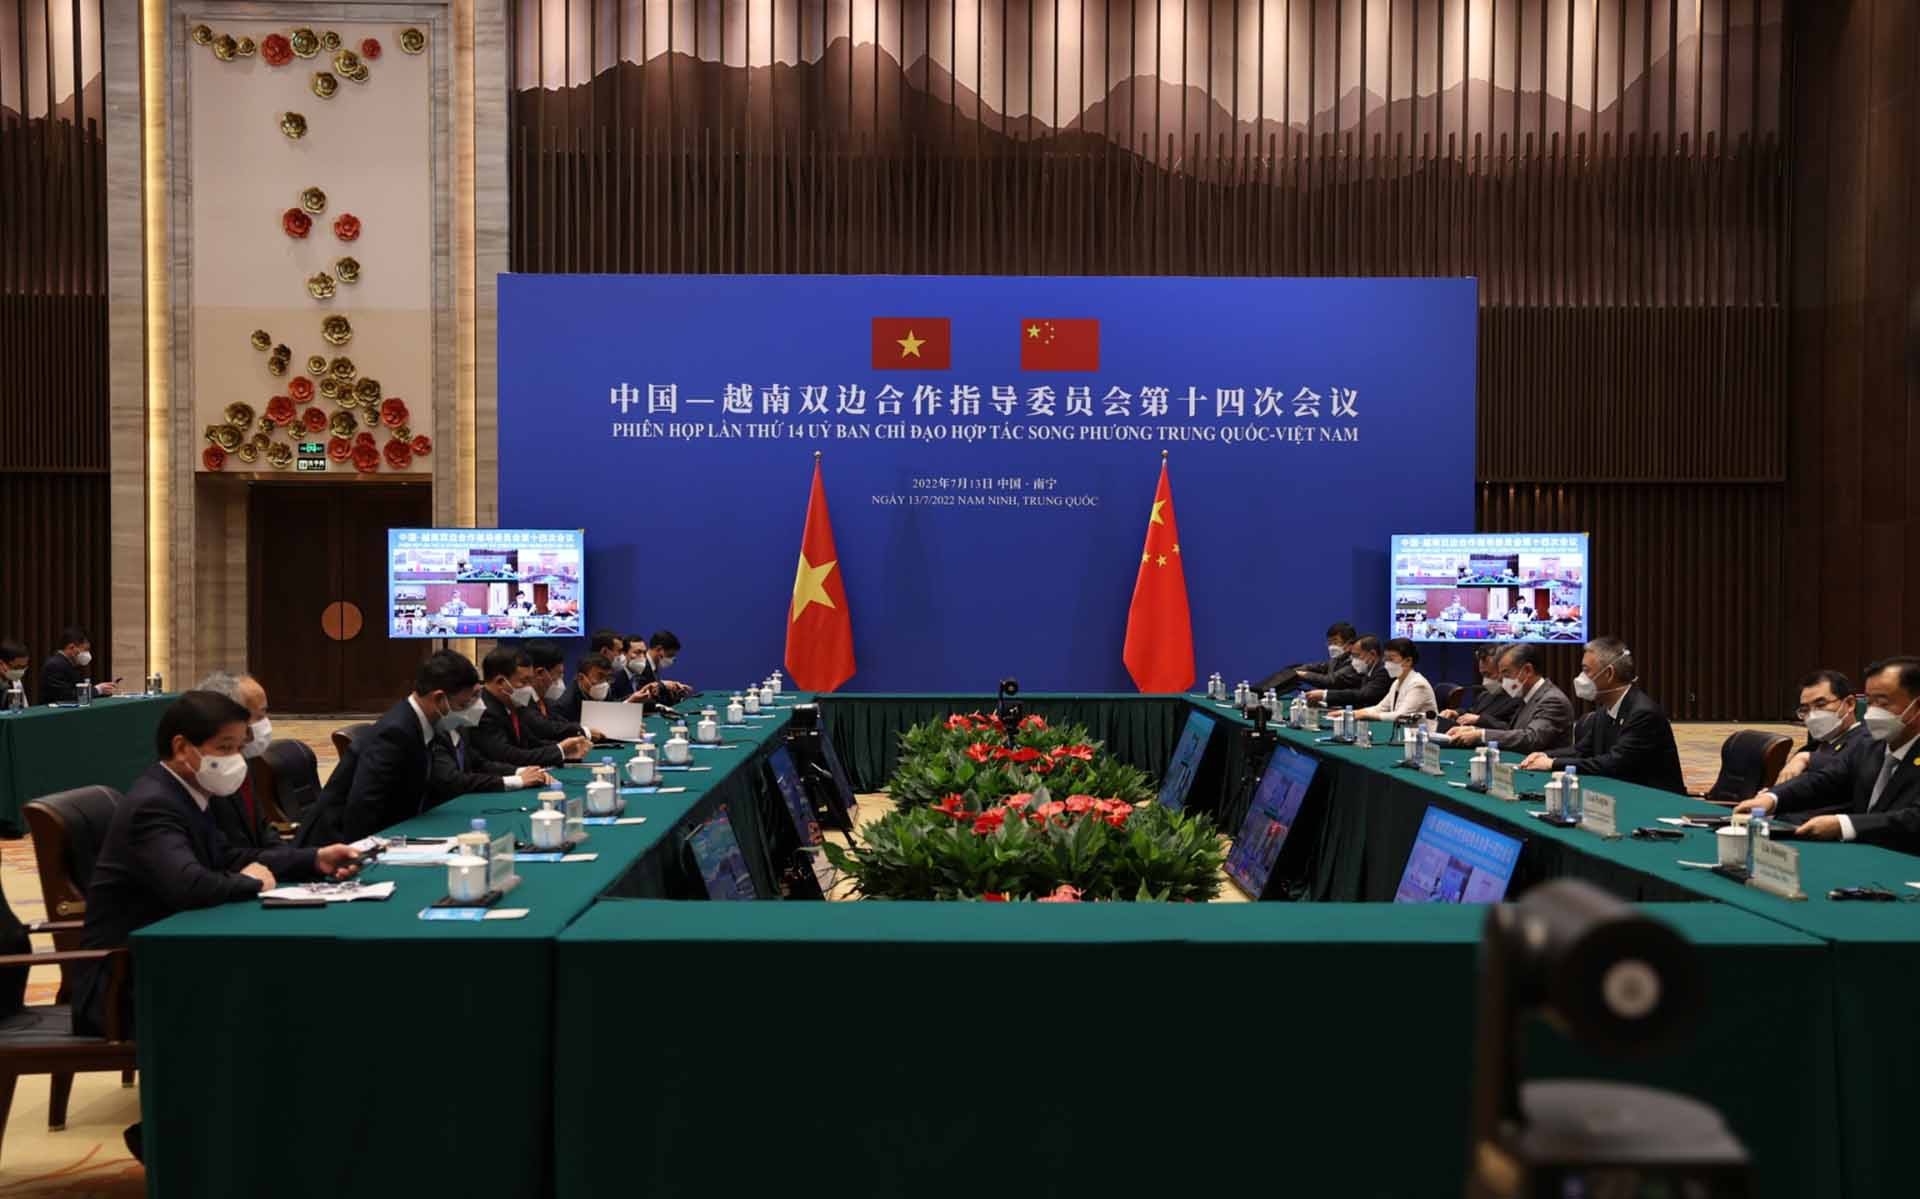 Toàn cảnh Phiên họp lần thứ 14 Ủy ban chỉ đạo hợp tác song phương Việt Nam-Trung Quốc.